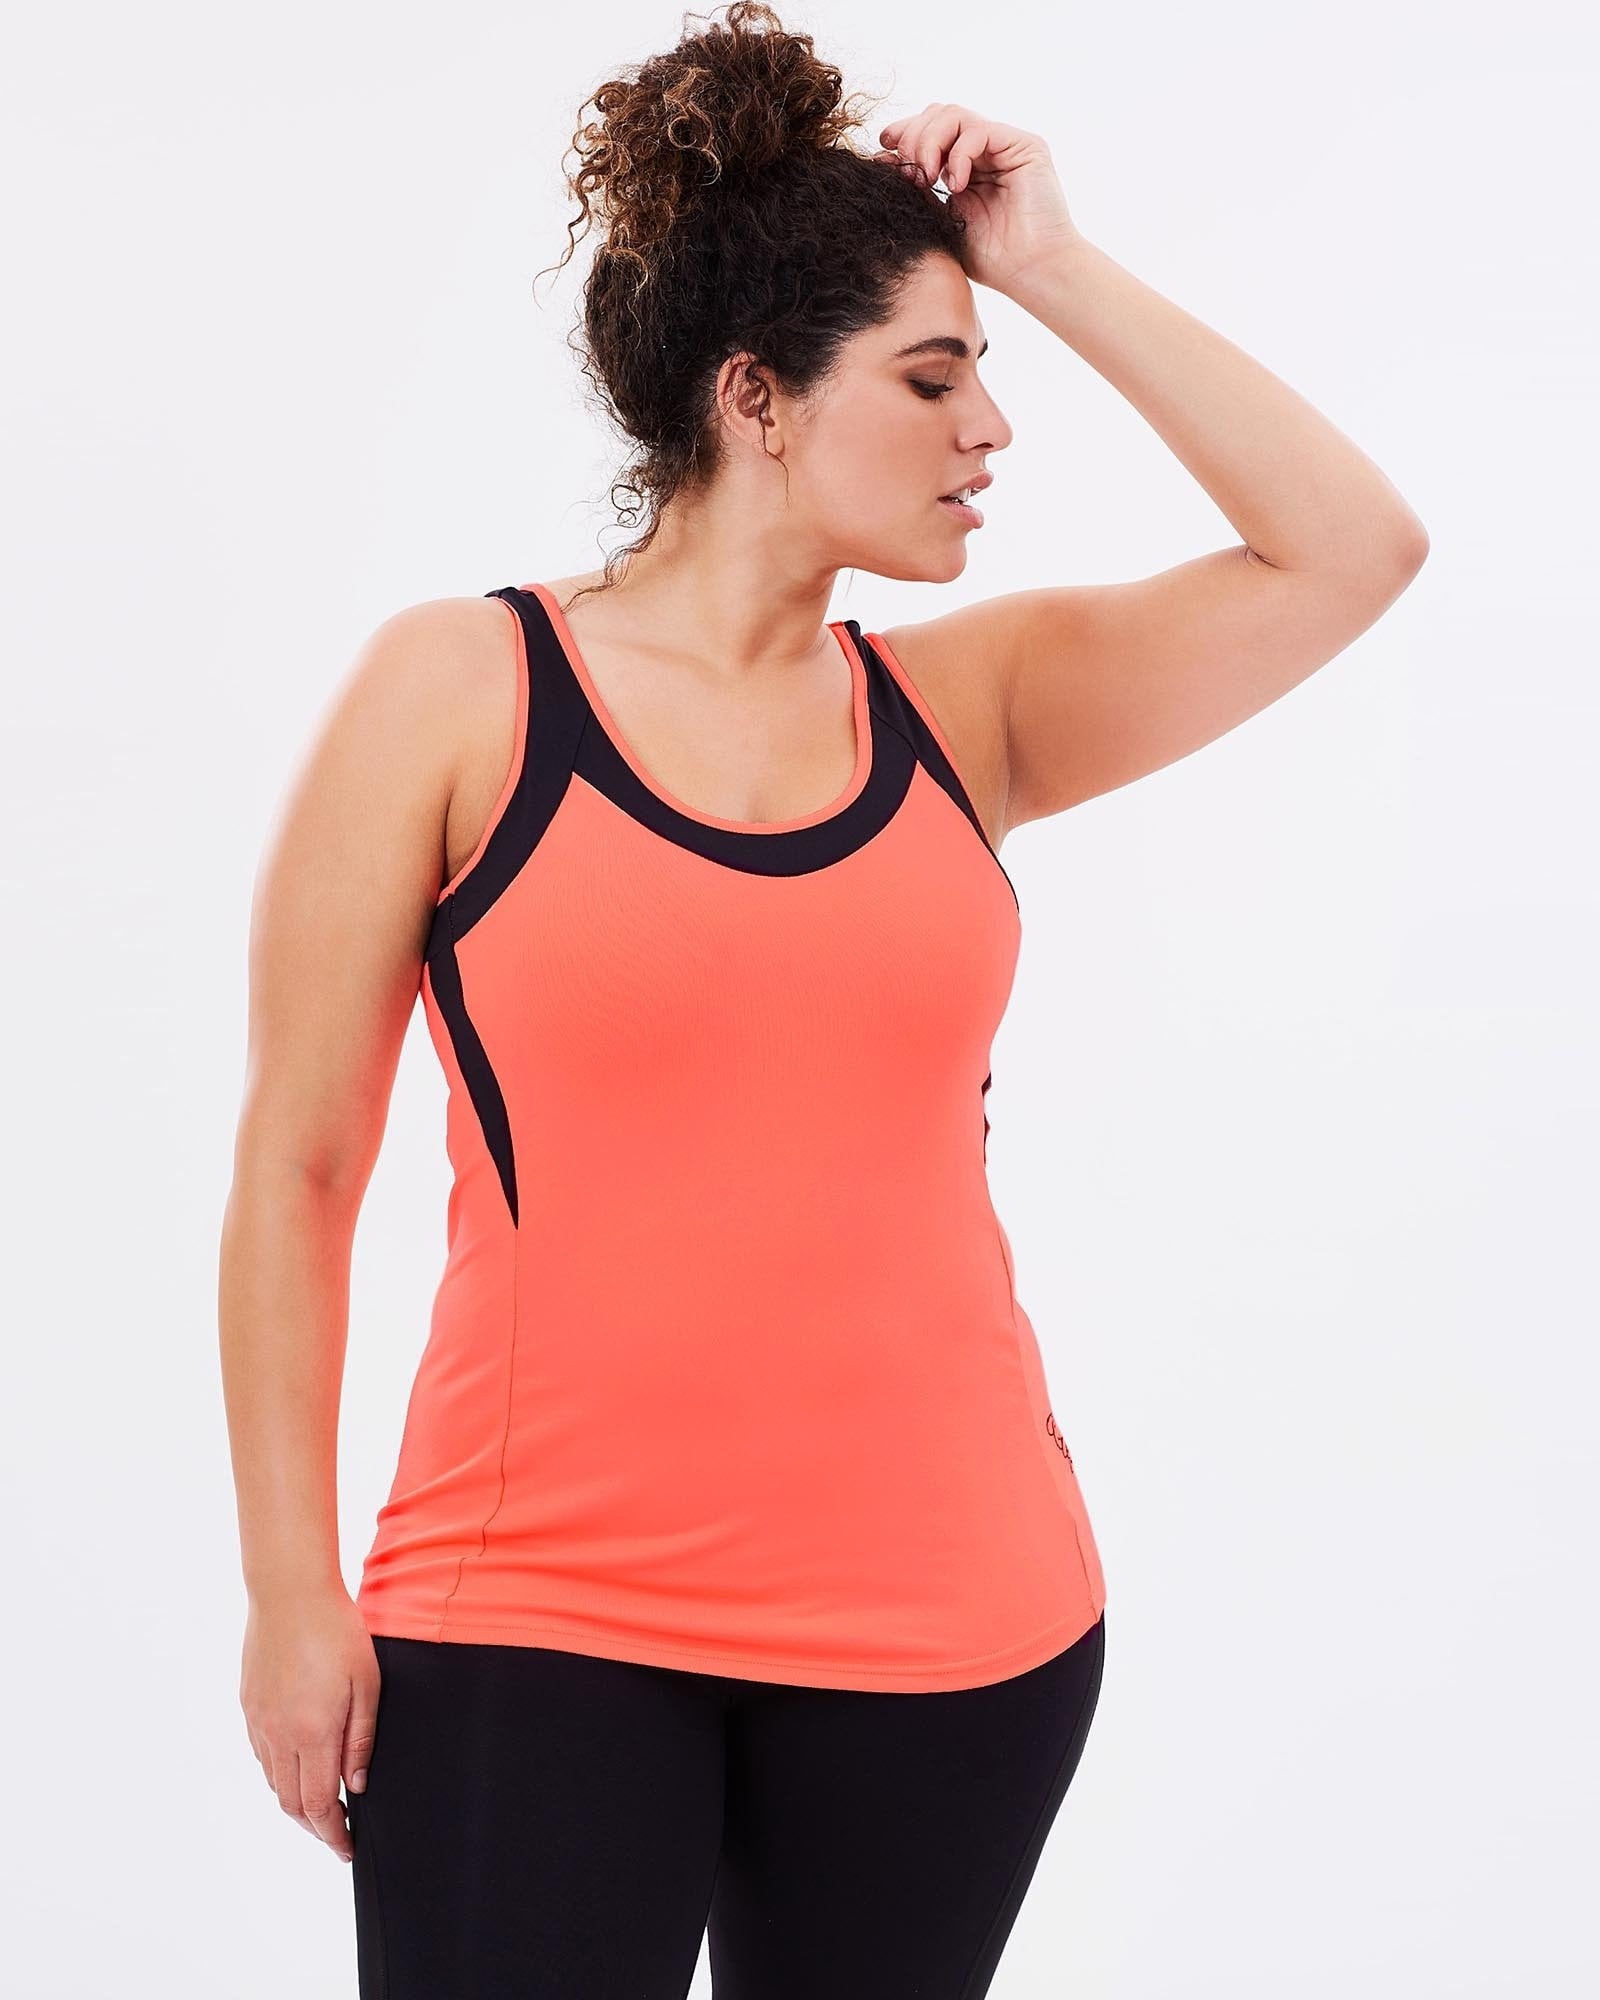 Workout Tank - Orange - Be Activewear